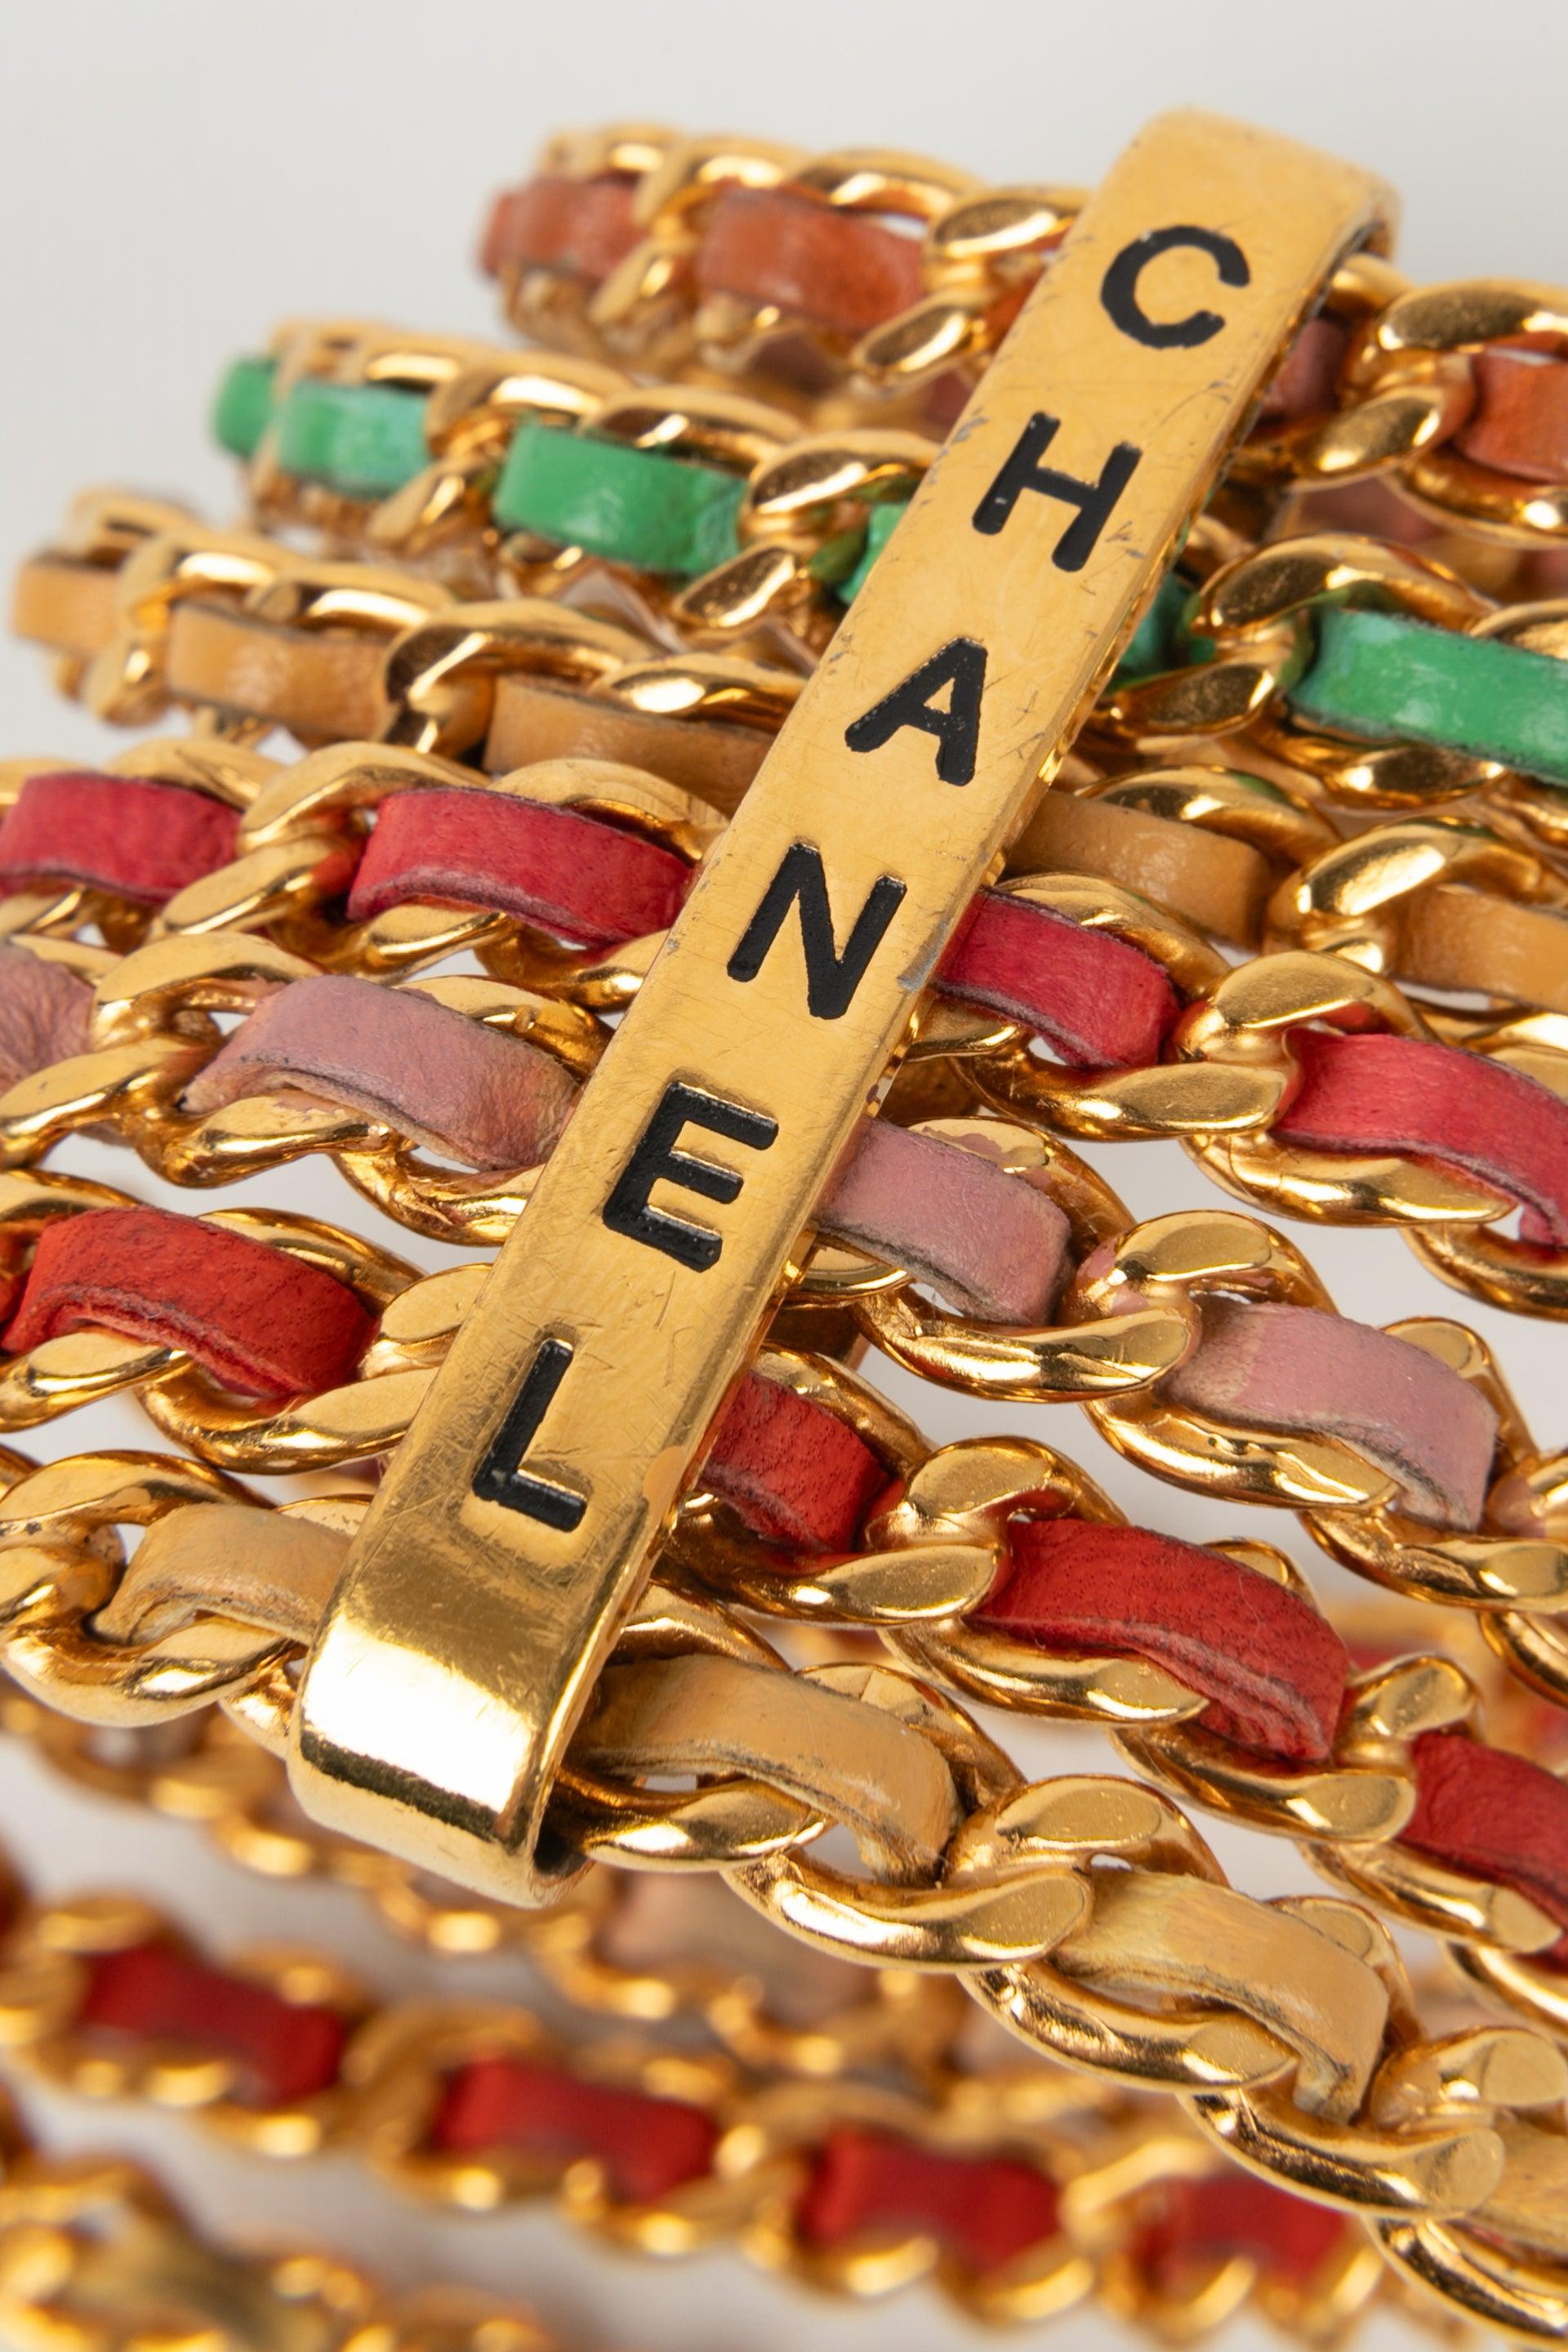 Chanel Cuff Bracelets Composed of Seven Golden Metal Bracelets, 1993 For Sale 1